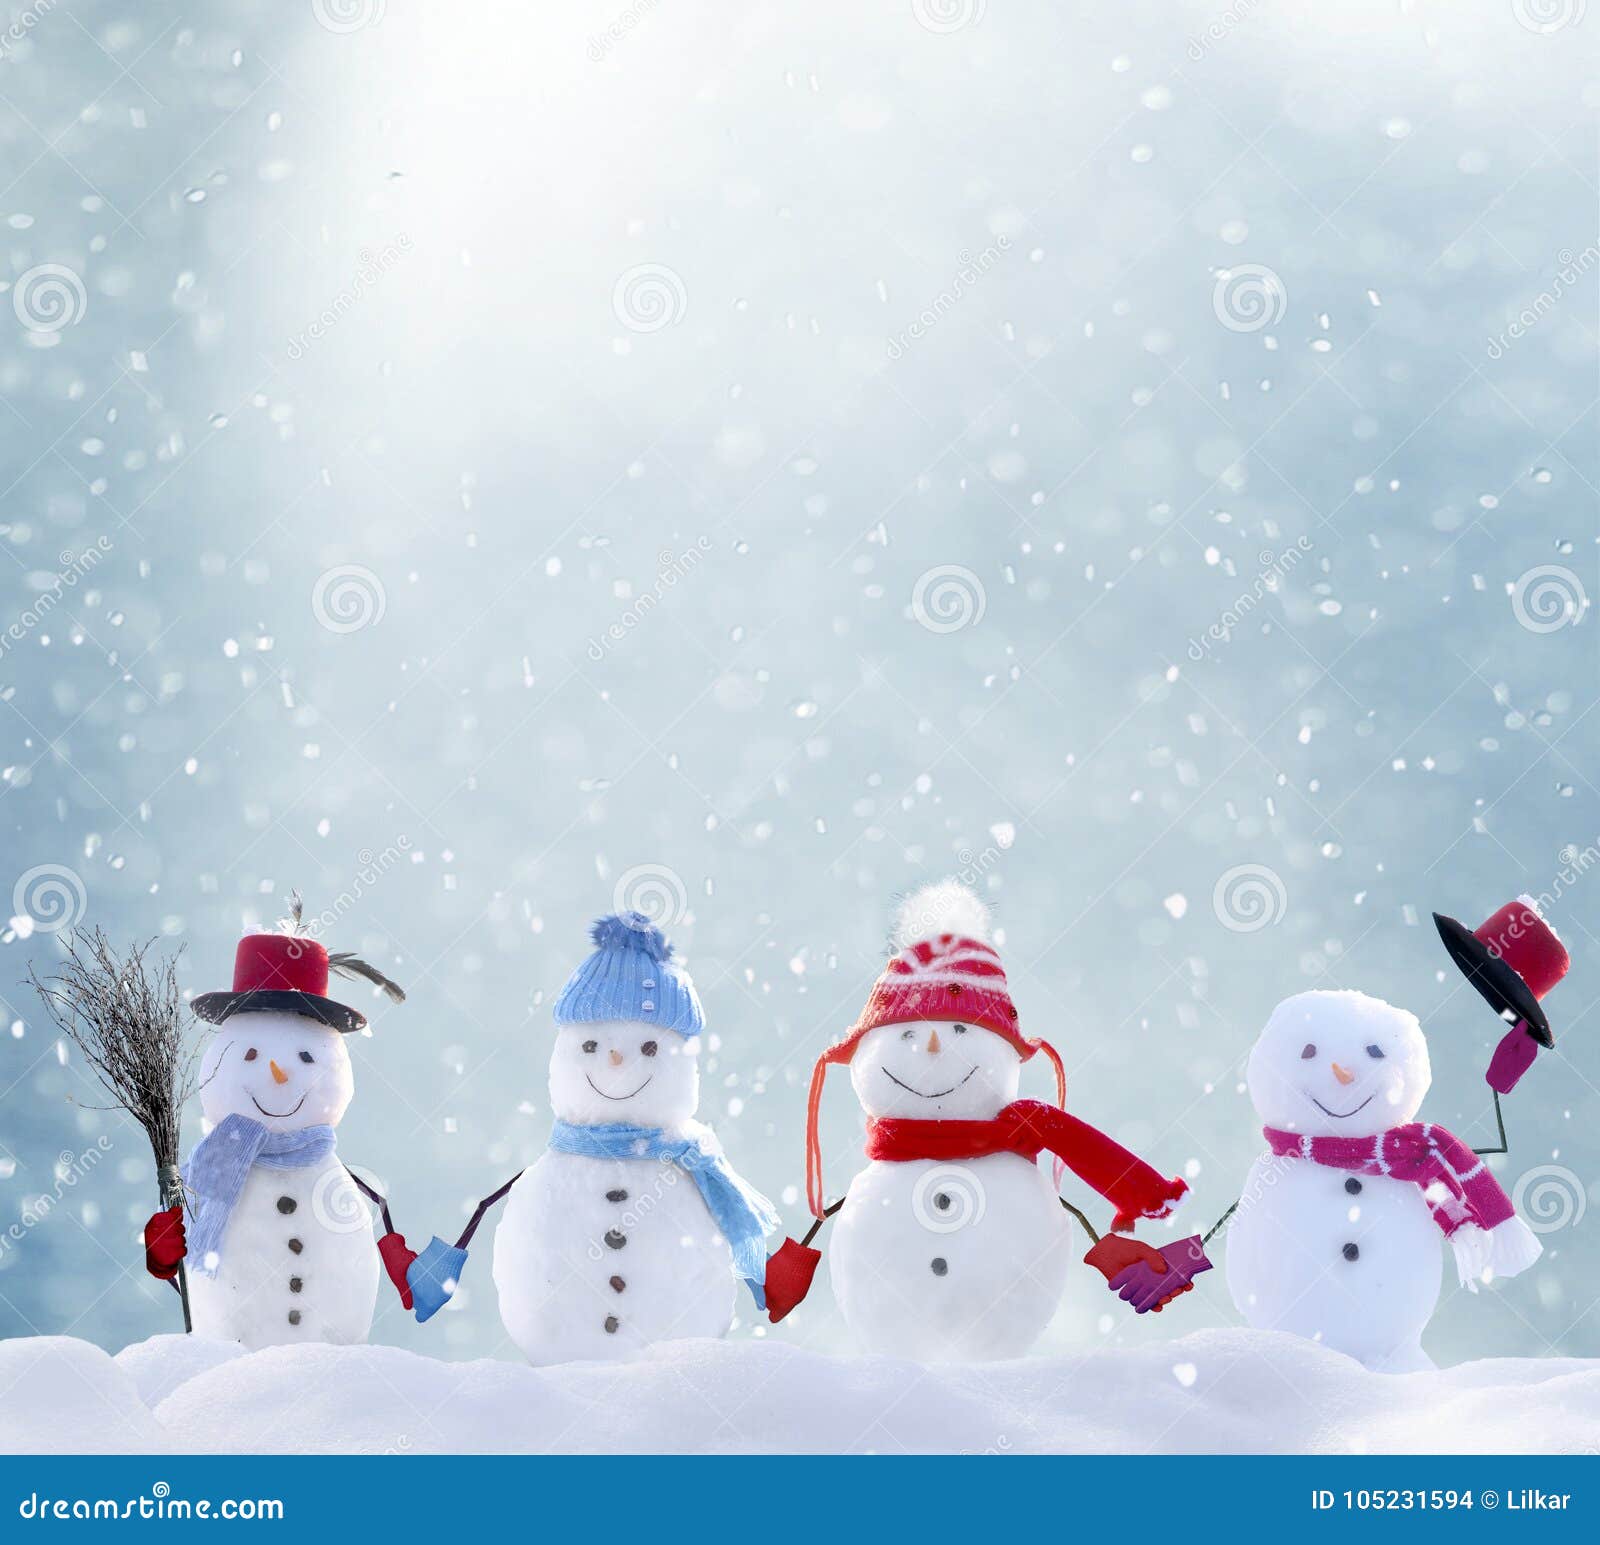 Foto Di Inverno Natale.Molti Pupazzi Di Neve Che Stanno Nel Paesaggio Di Natale Di Inverno Fotografia Stock Immagine Di Allegro Paesaggio 105231594